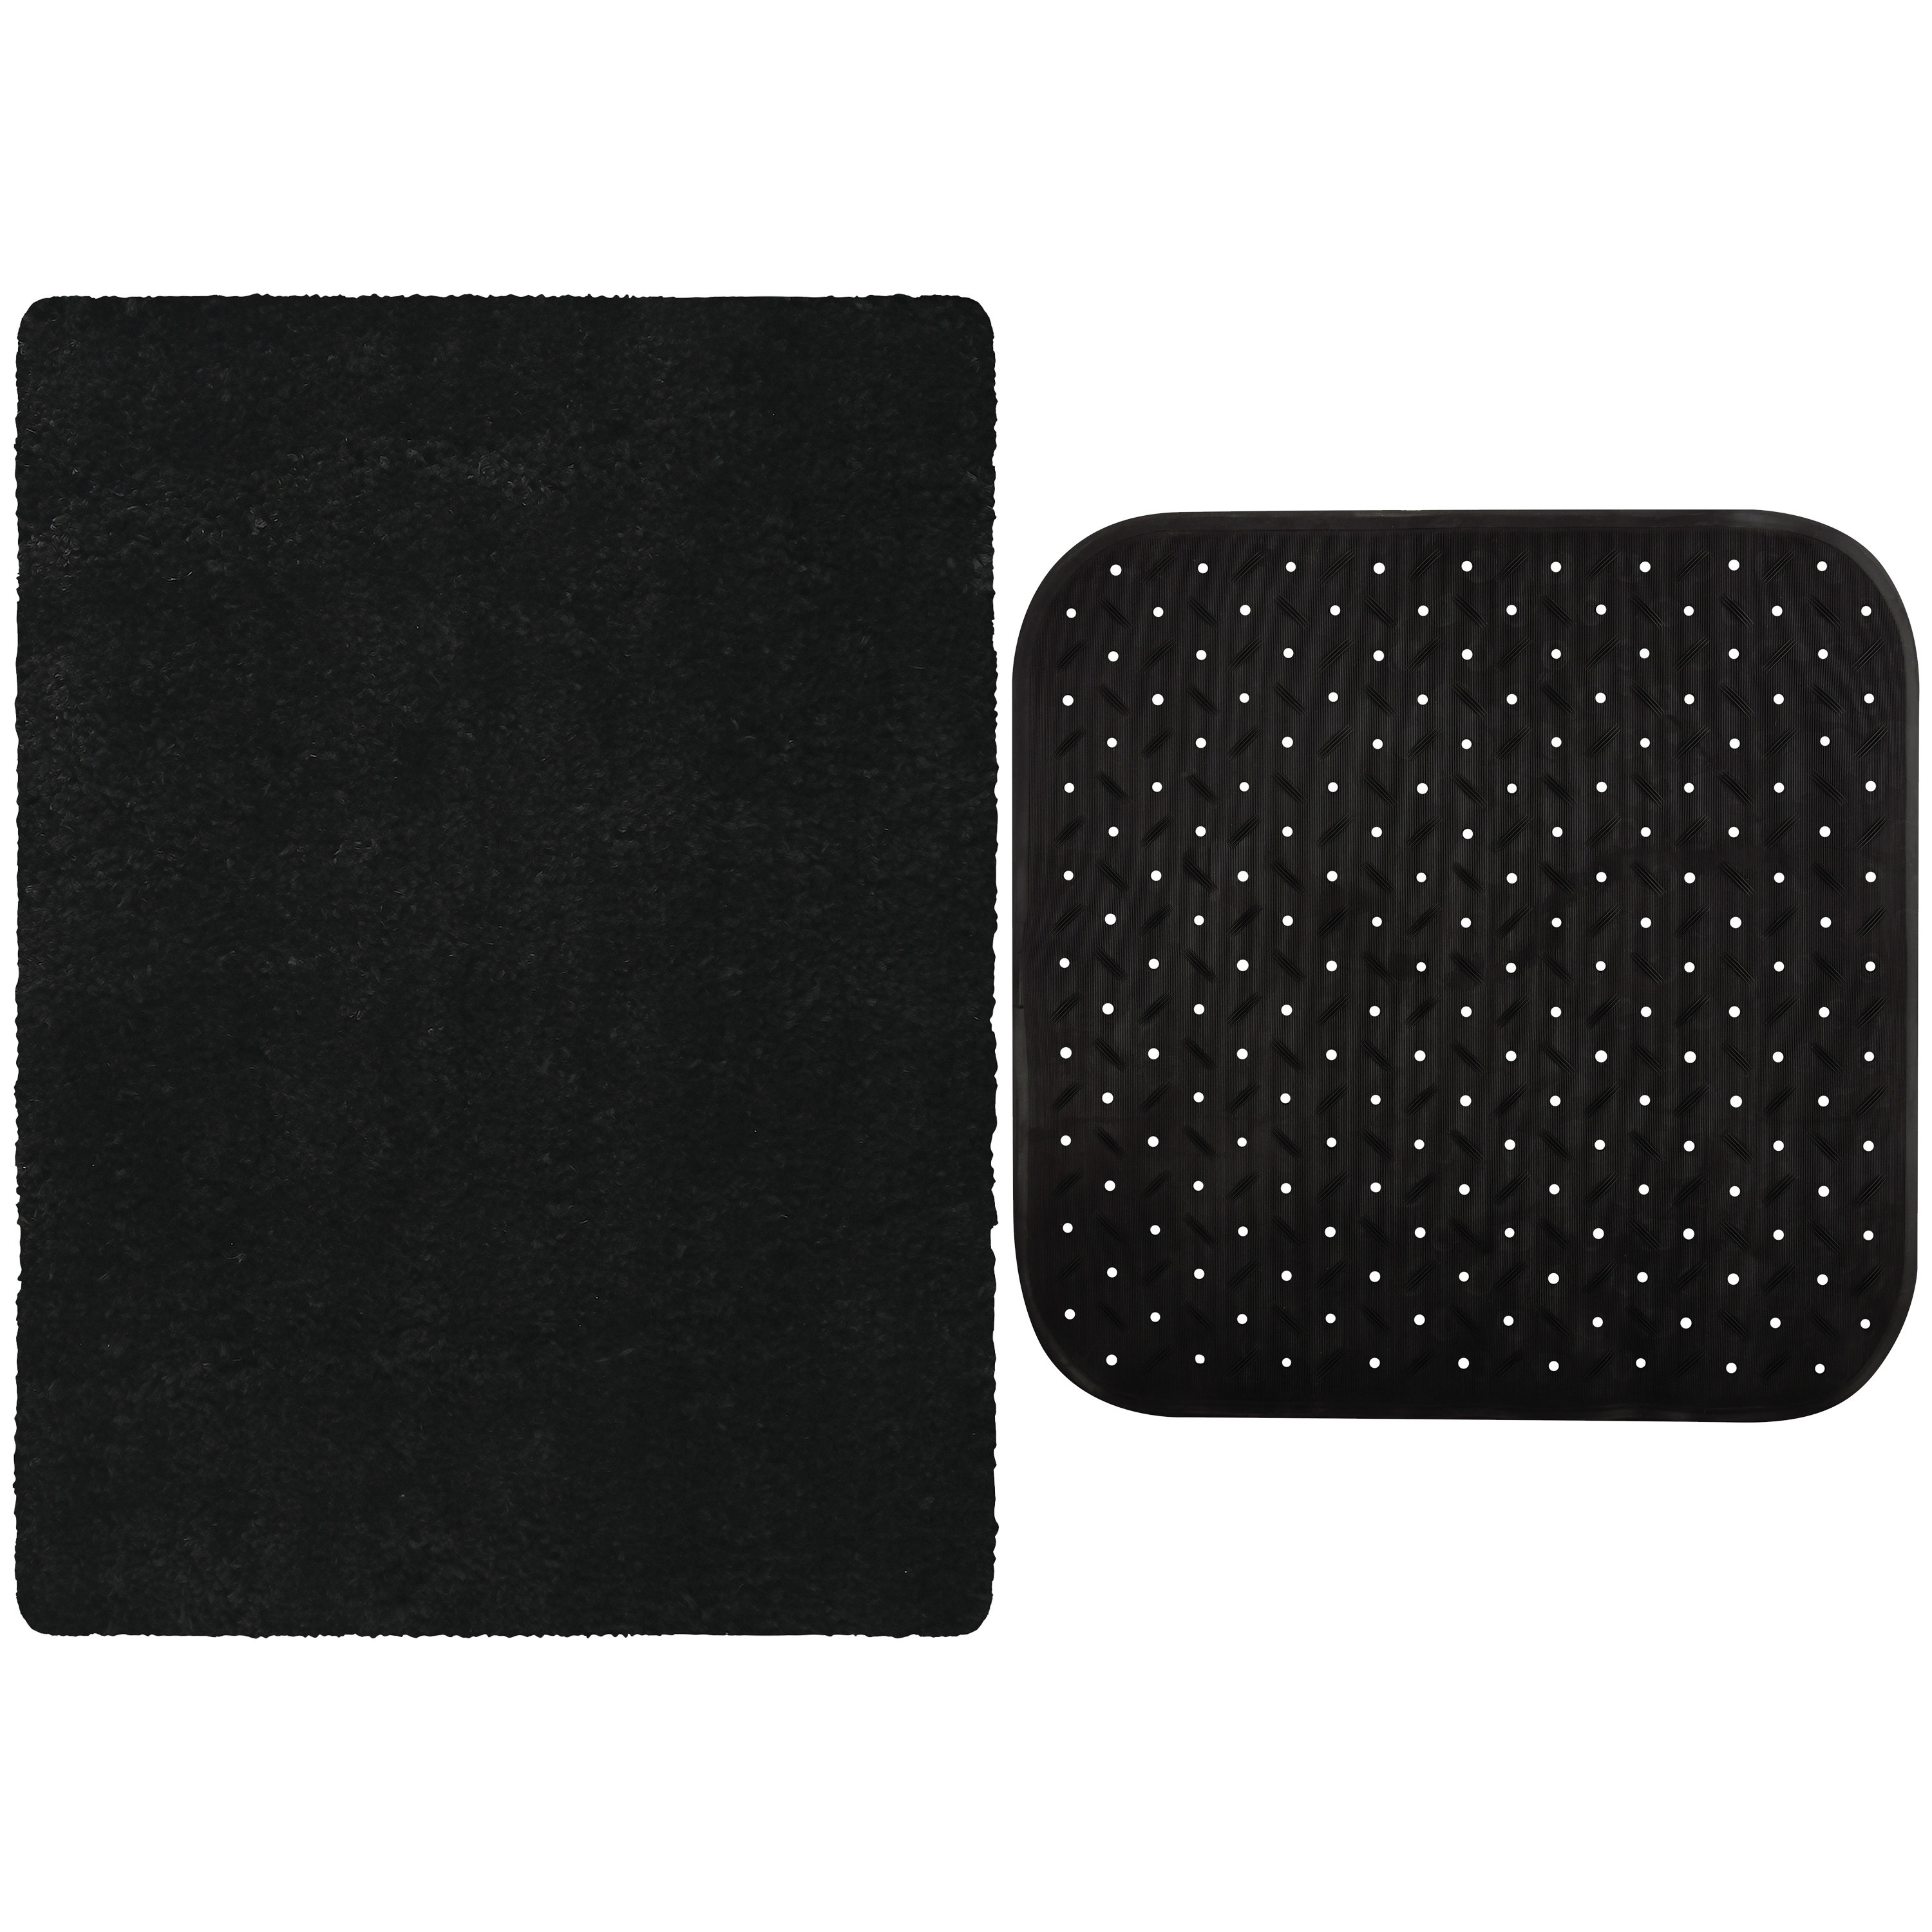 MSV Douche anti-slip mat en droogloop mat Venice badkamer set rubber-microvezel zwart